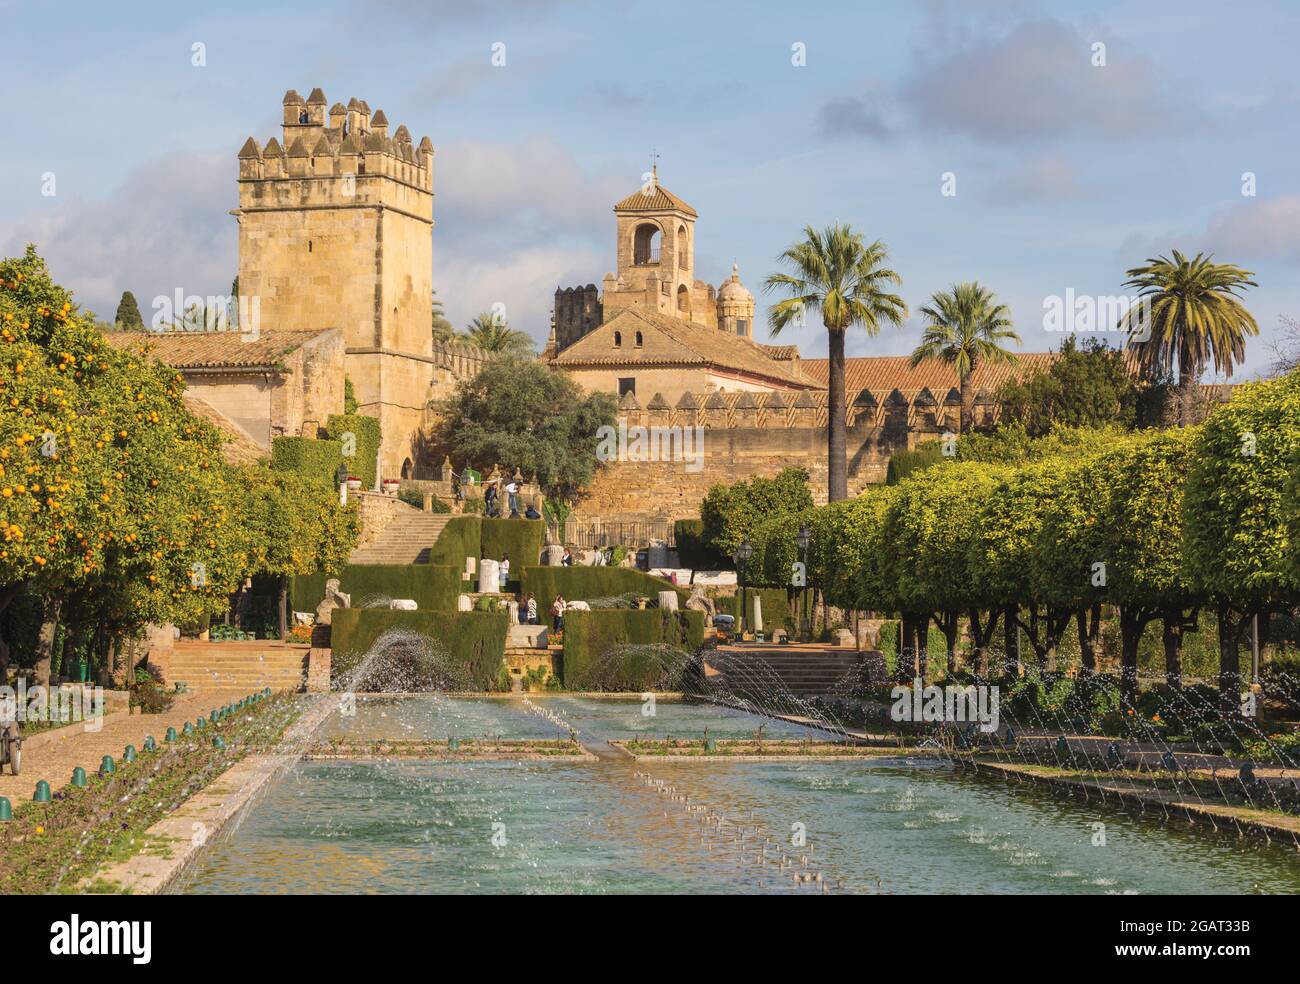 Cordova, Provincia di Cordova, Andalusia, Spagna meridionale. Alcazar de los Reyes Cristianos, palazzo-fortezza dei Re Cristiani, visto dai giardini di t Foto Stock